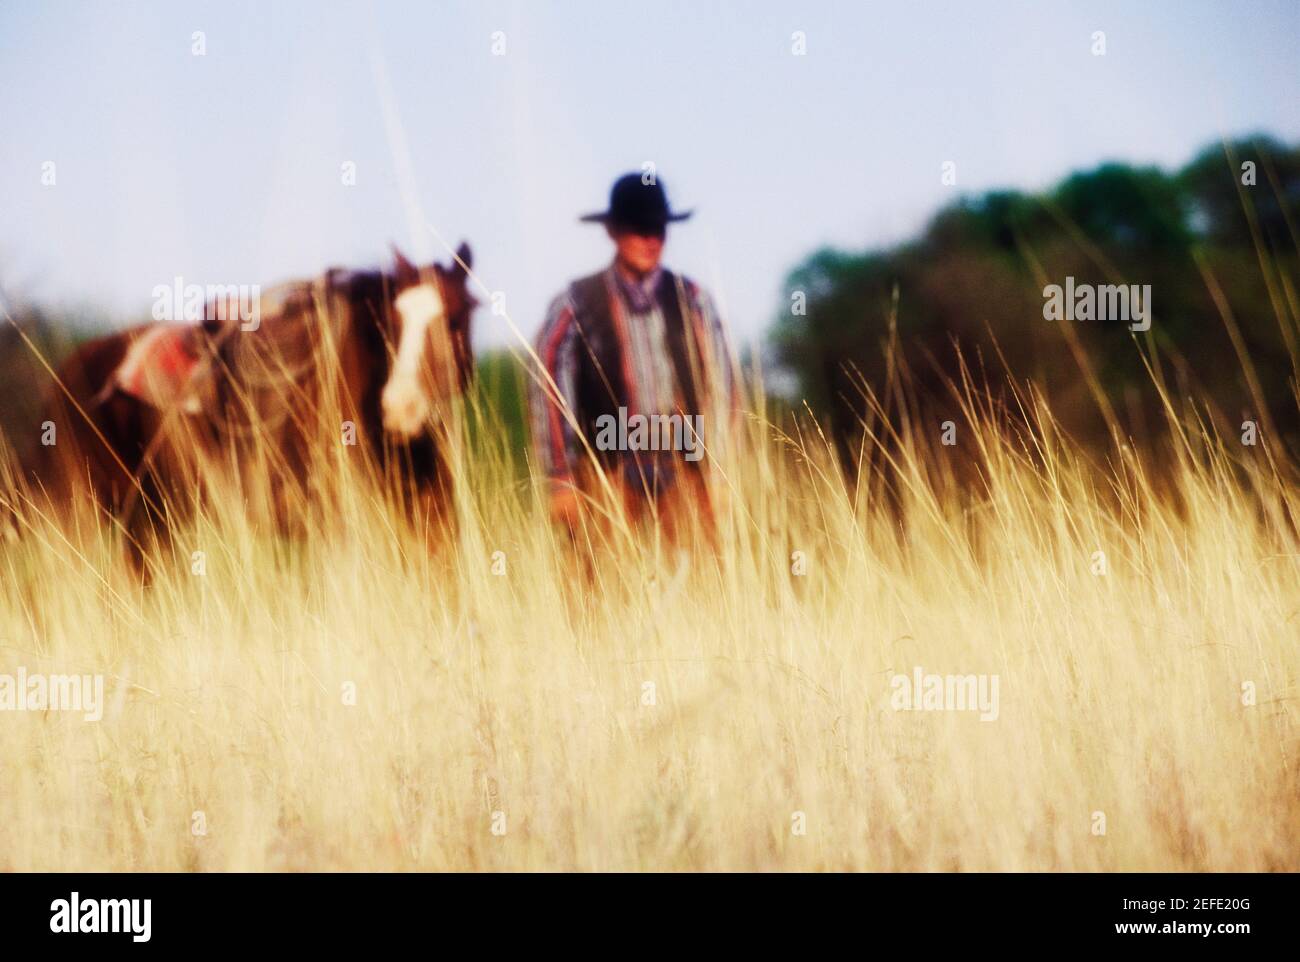 Cowboy debout avec un cheval, Texas, Etats-Unis Banque D'Images